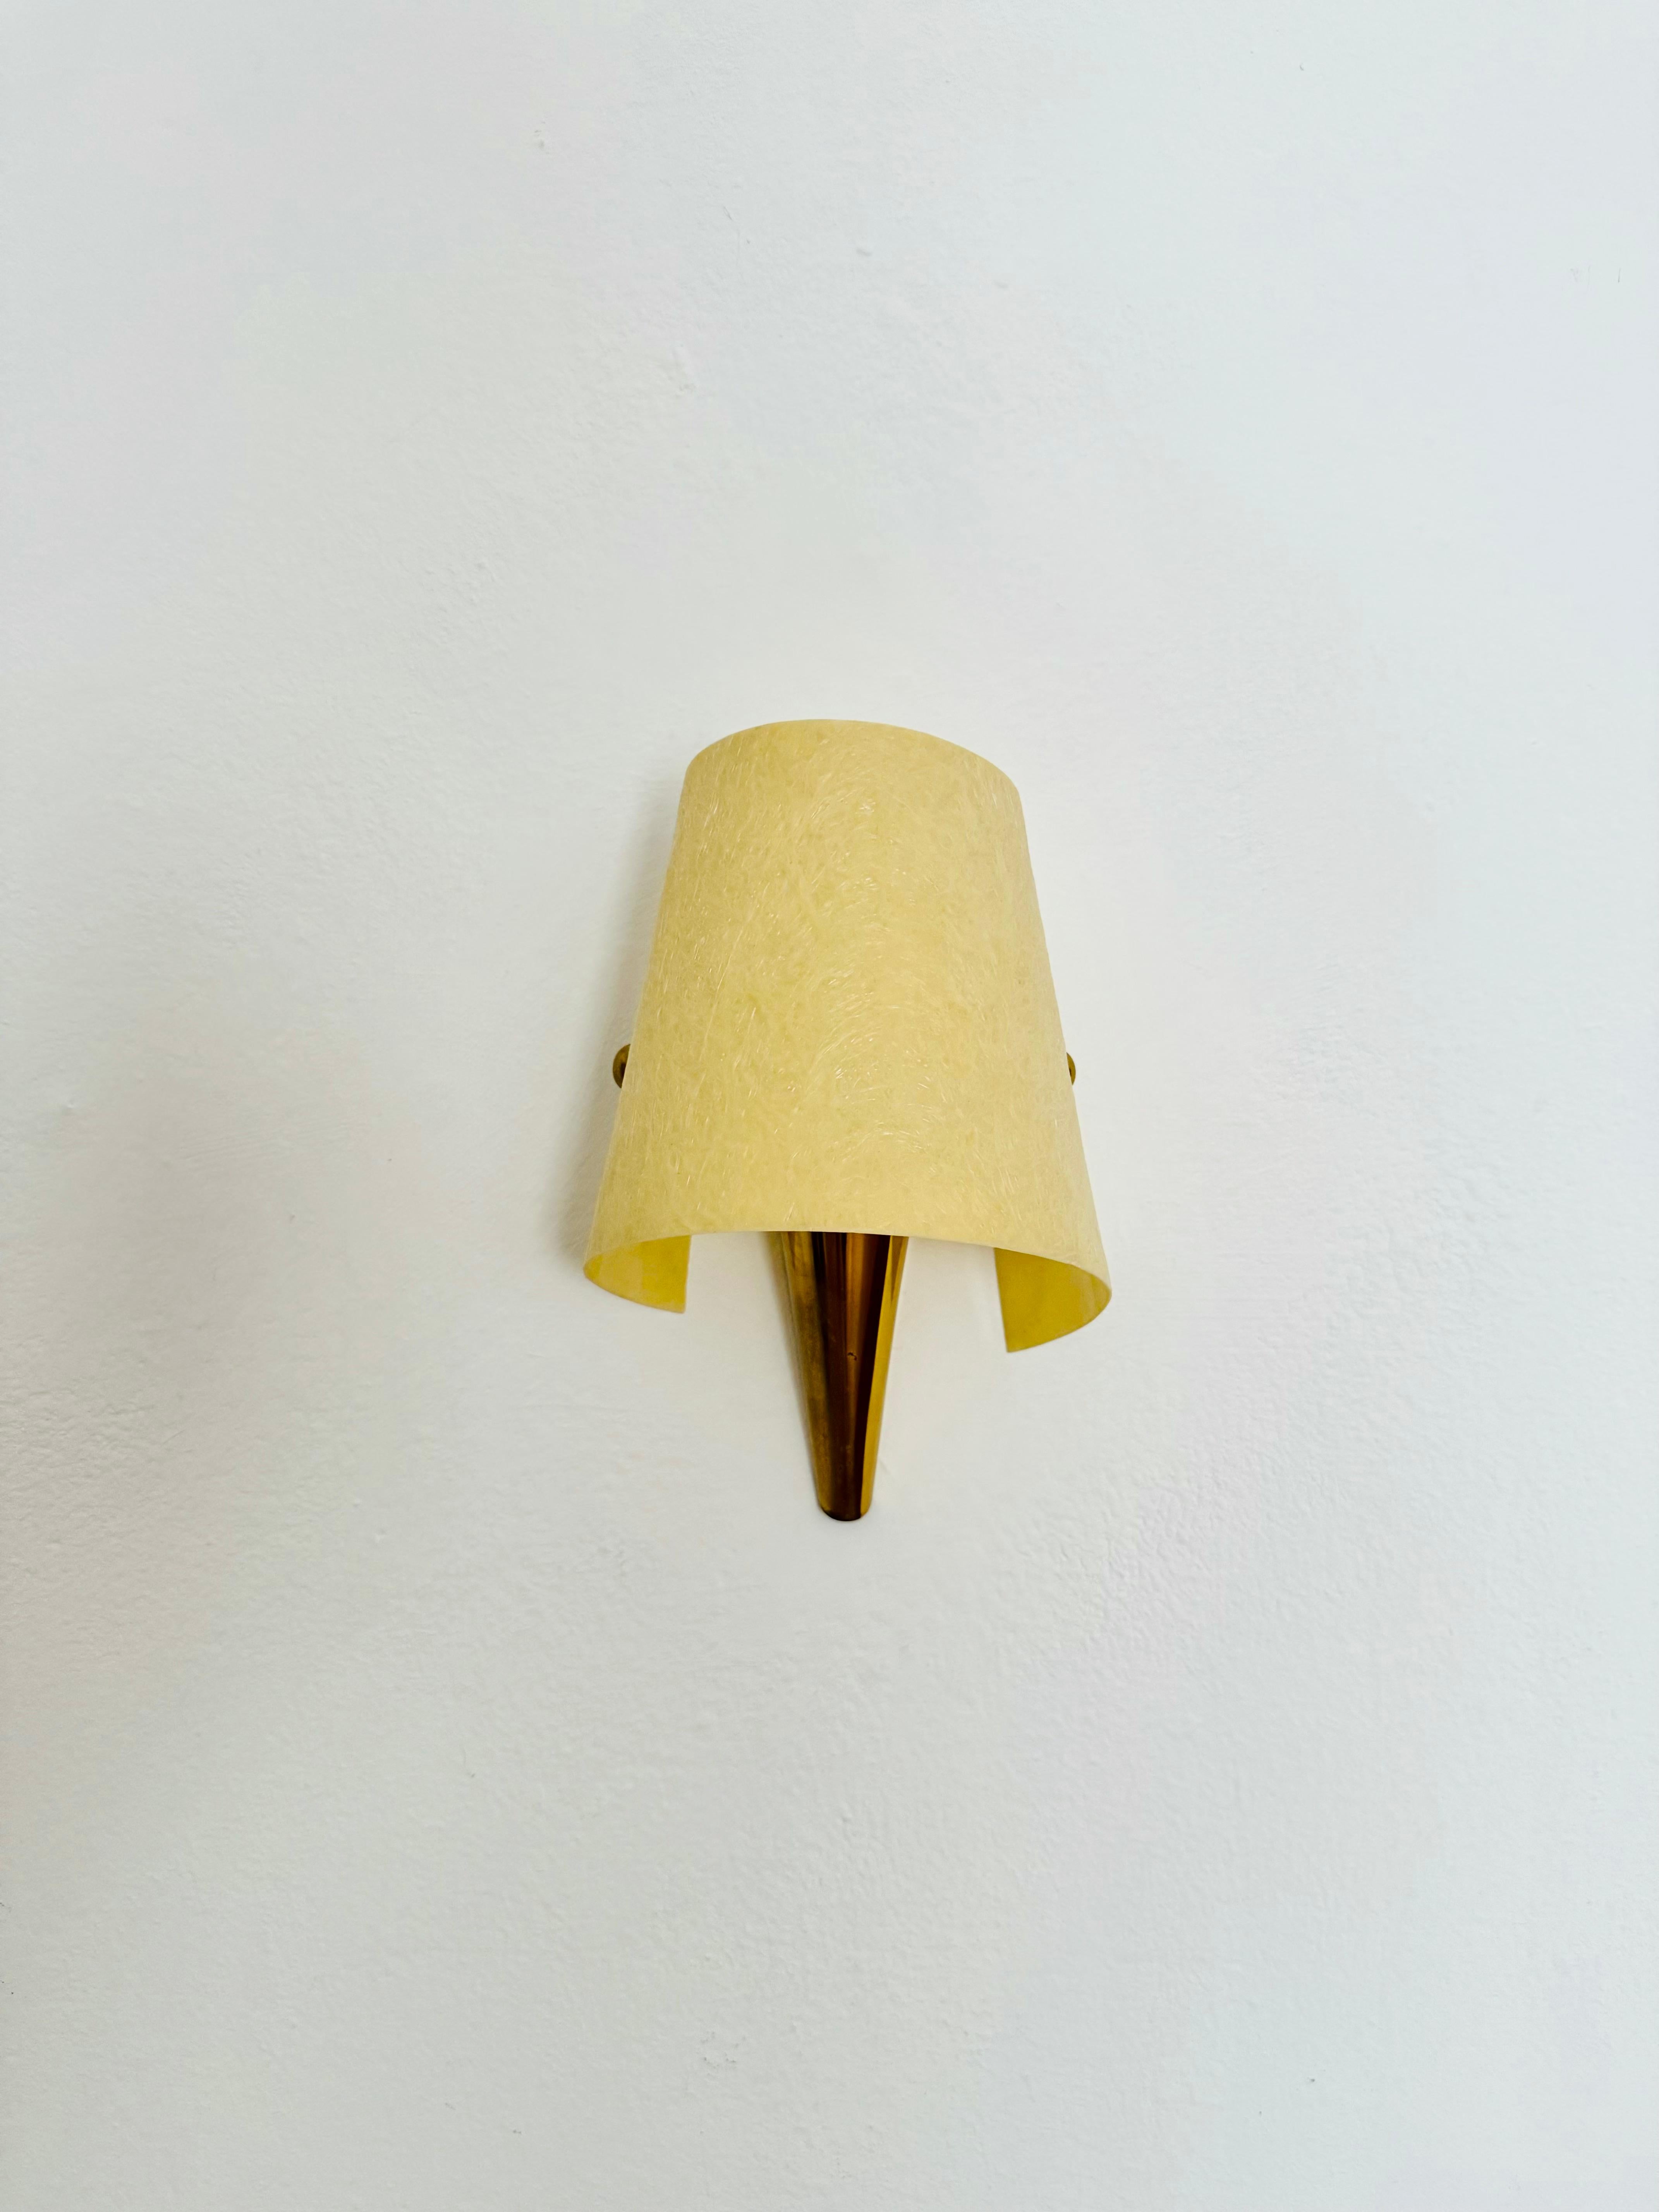 Schöne kleine Wandlampen aus Messing aus den 50er Jahren.
Liebevolles Design und hochwertige Verarbeitung.
Der Lampenschirm aus Fiberglas erzeugt ein gemütliches Licht.

Die Bilder sind Teil der Beschreibung.

Wenn Sie Fragen haben, helfe ich Ihnen